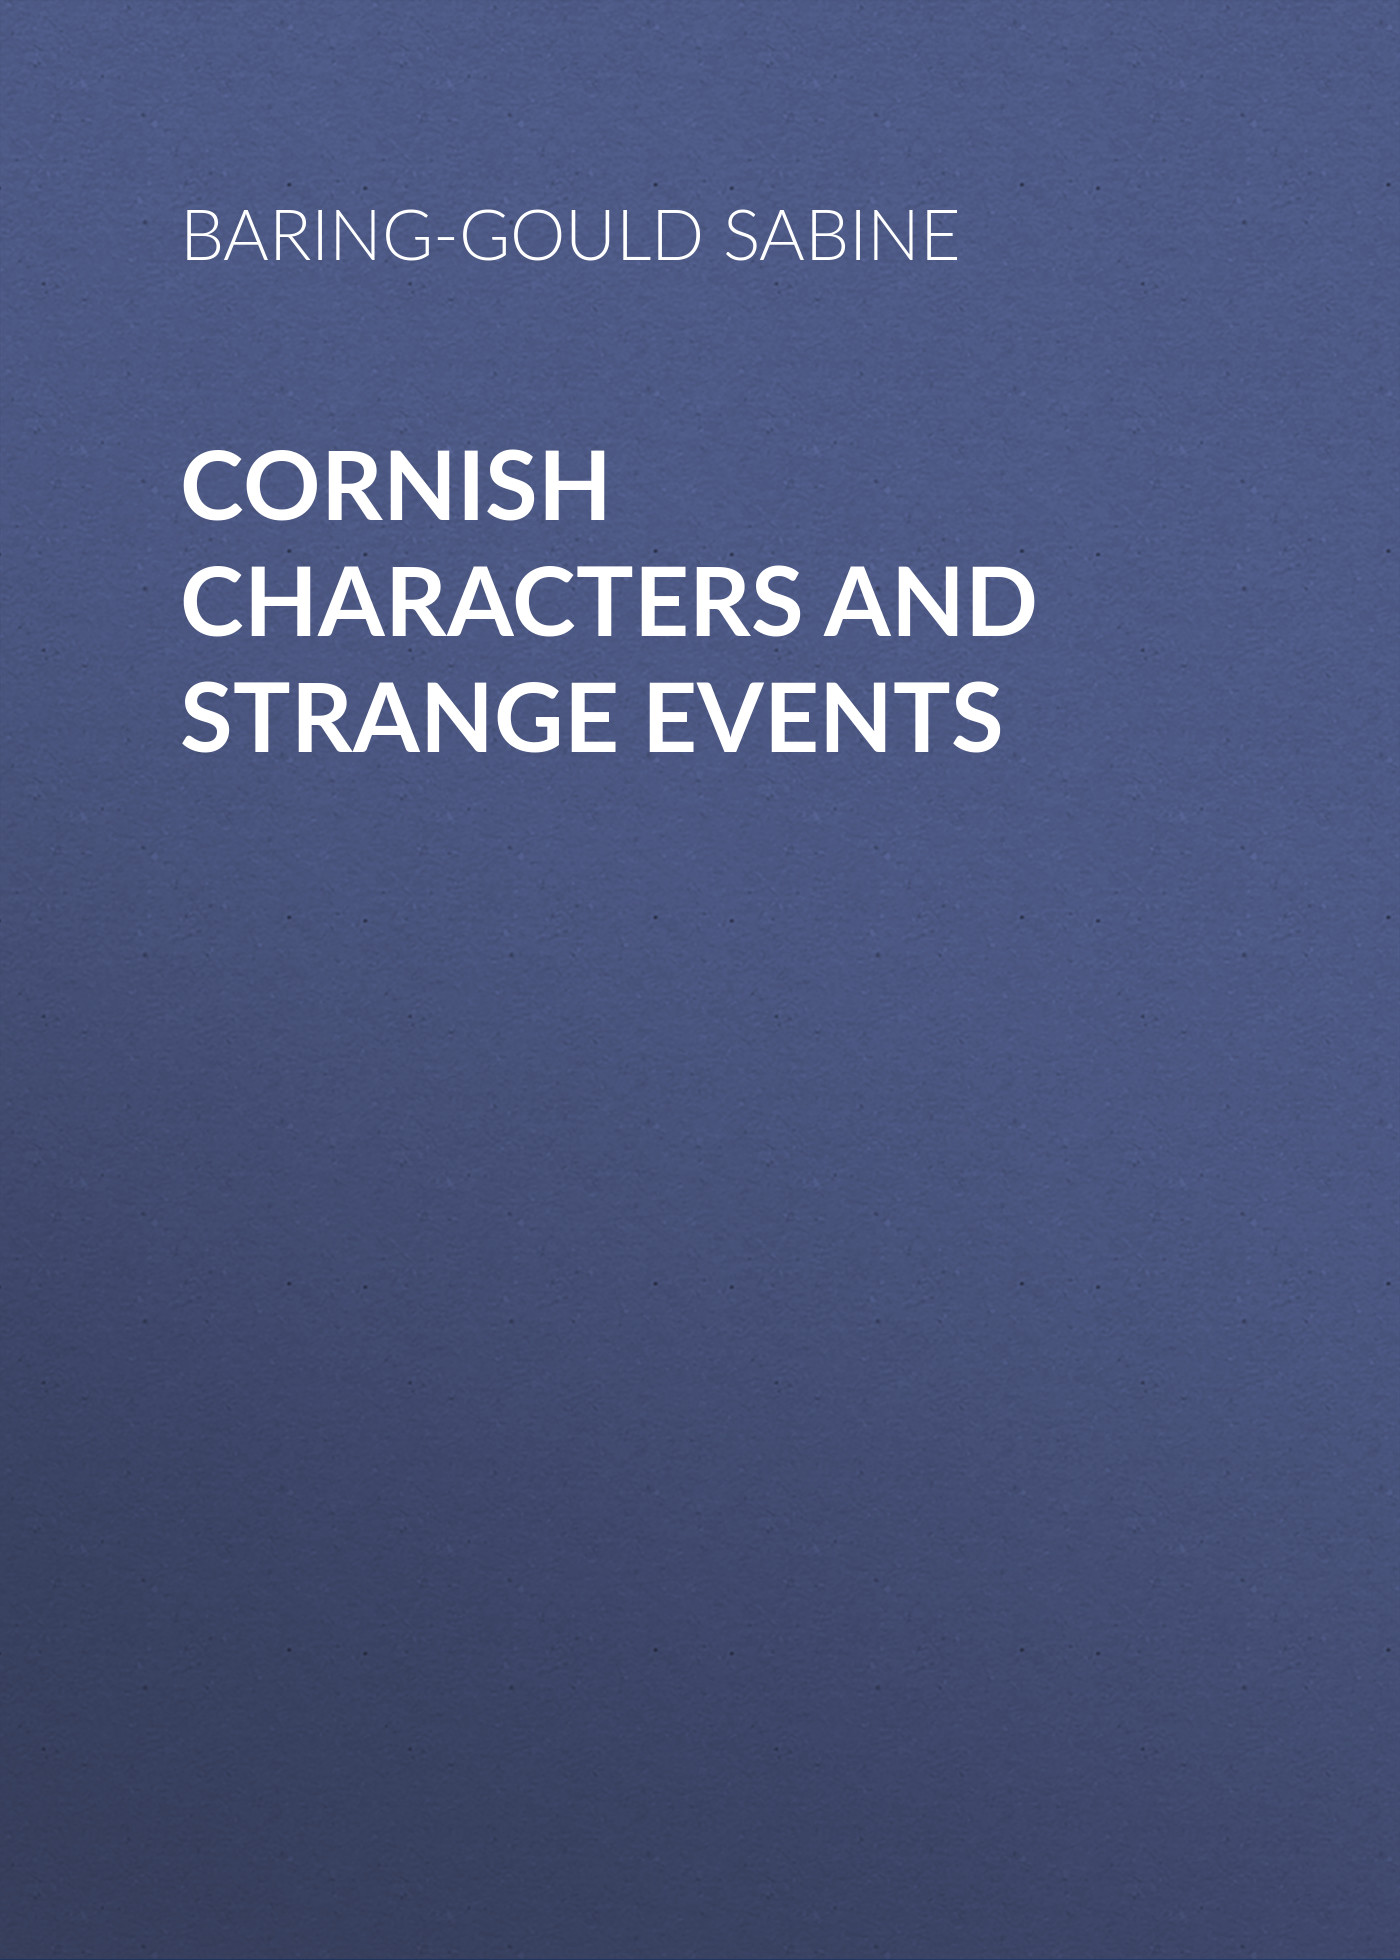 Книга Cornish Characters and Strange Events из серии , созданная Sabine Baring-Gould, может относится к жанру Зарубежная старинная литература, Зарубежная классика. Стоимость электронной книги Cornish Characters and Strange Events с идентификатором 24167844 составляет 0 руб.